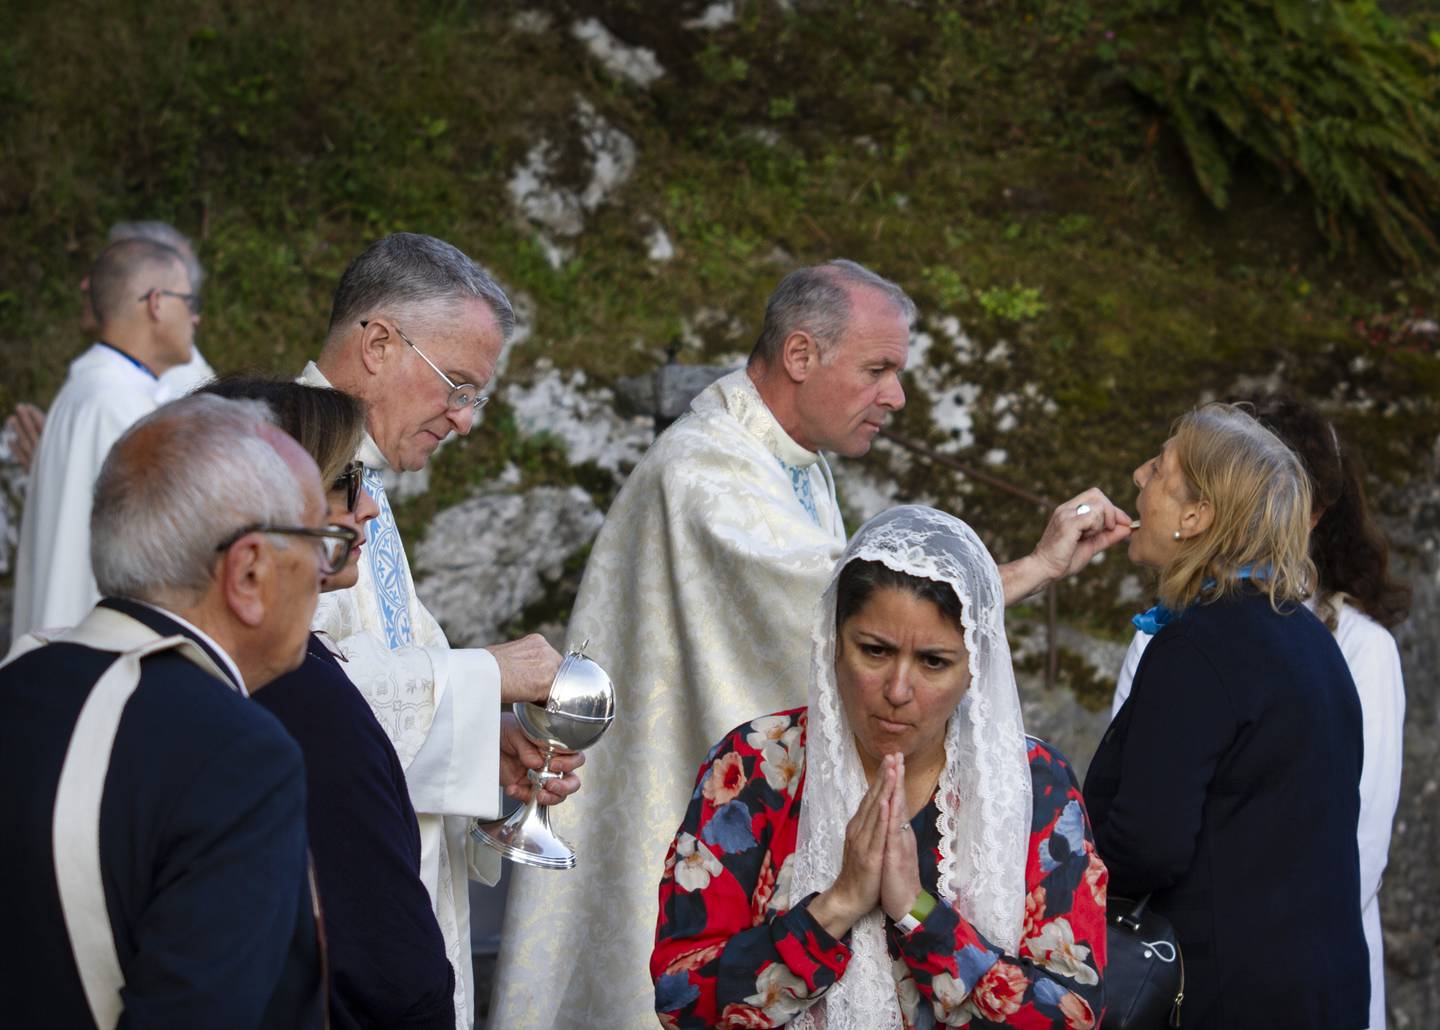 KOMMUNION: Det feires messe i grotten i Lourdes under militærvalfarten forrige helg. Religiøse ritualer kan spille en viktig rolle for veteraner som sliter med moralske skader og tilbaketrekning.